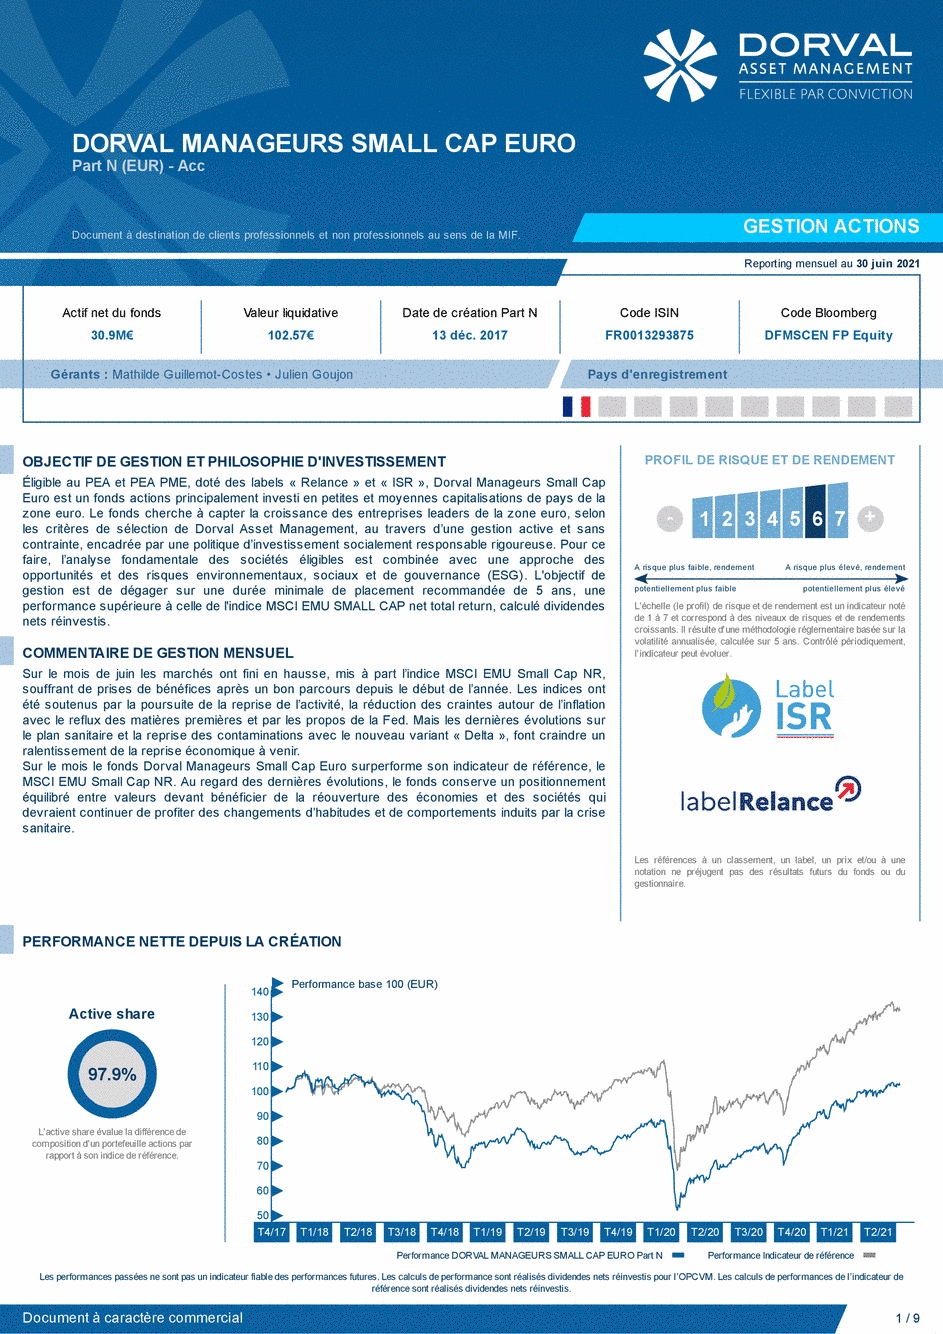 Reporting DORVAL MANAGEURS SMALL CAP EURO N - 30/06/2021 - Français